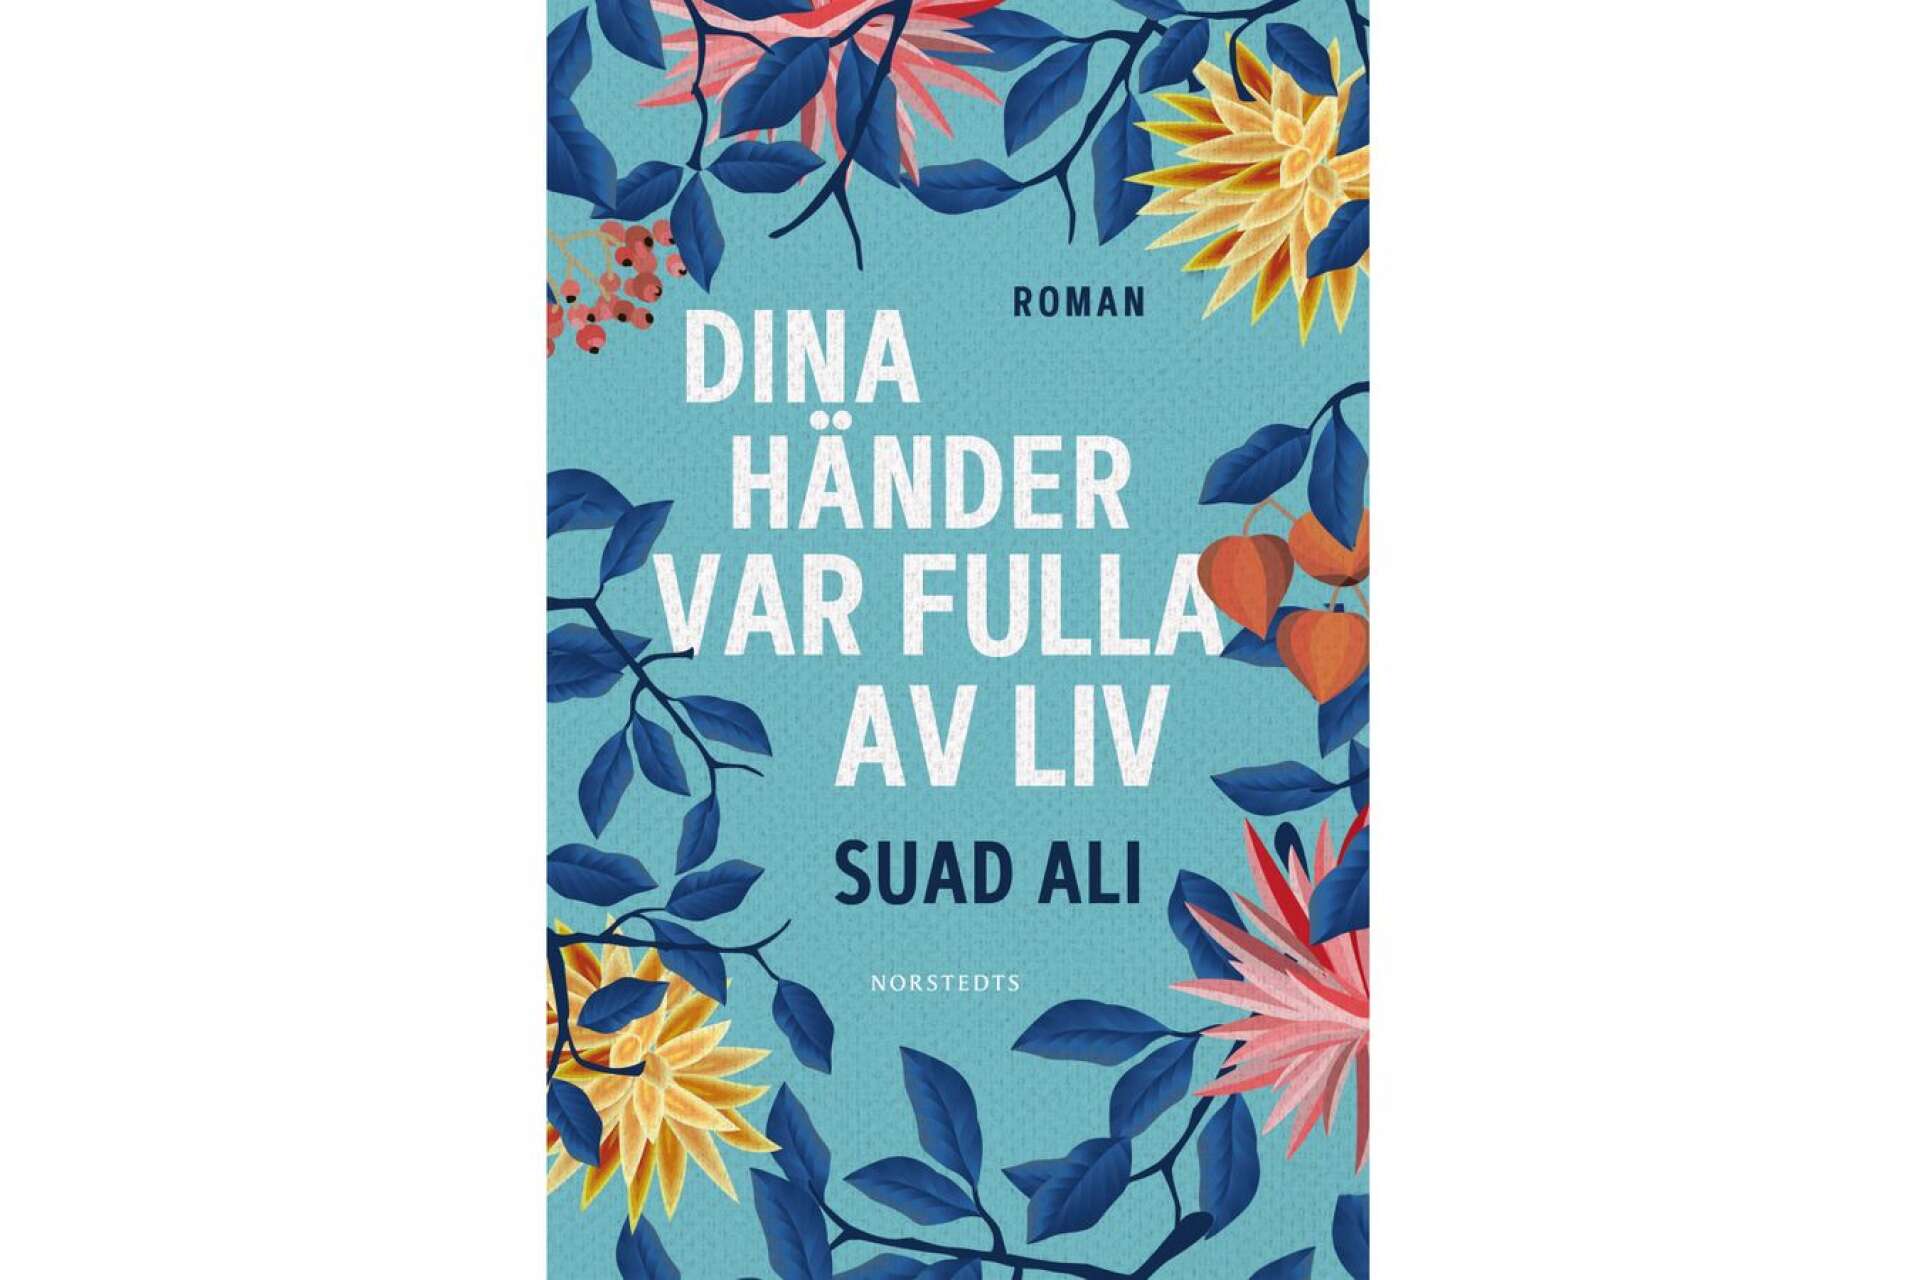 Titel: Dina händer var fulla av liv Författare: Suad Ali Förlag: Norstedts